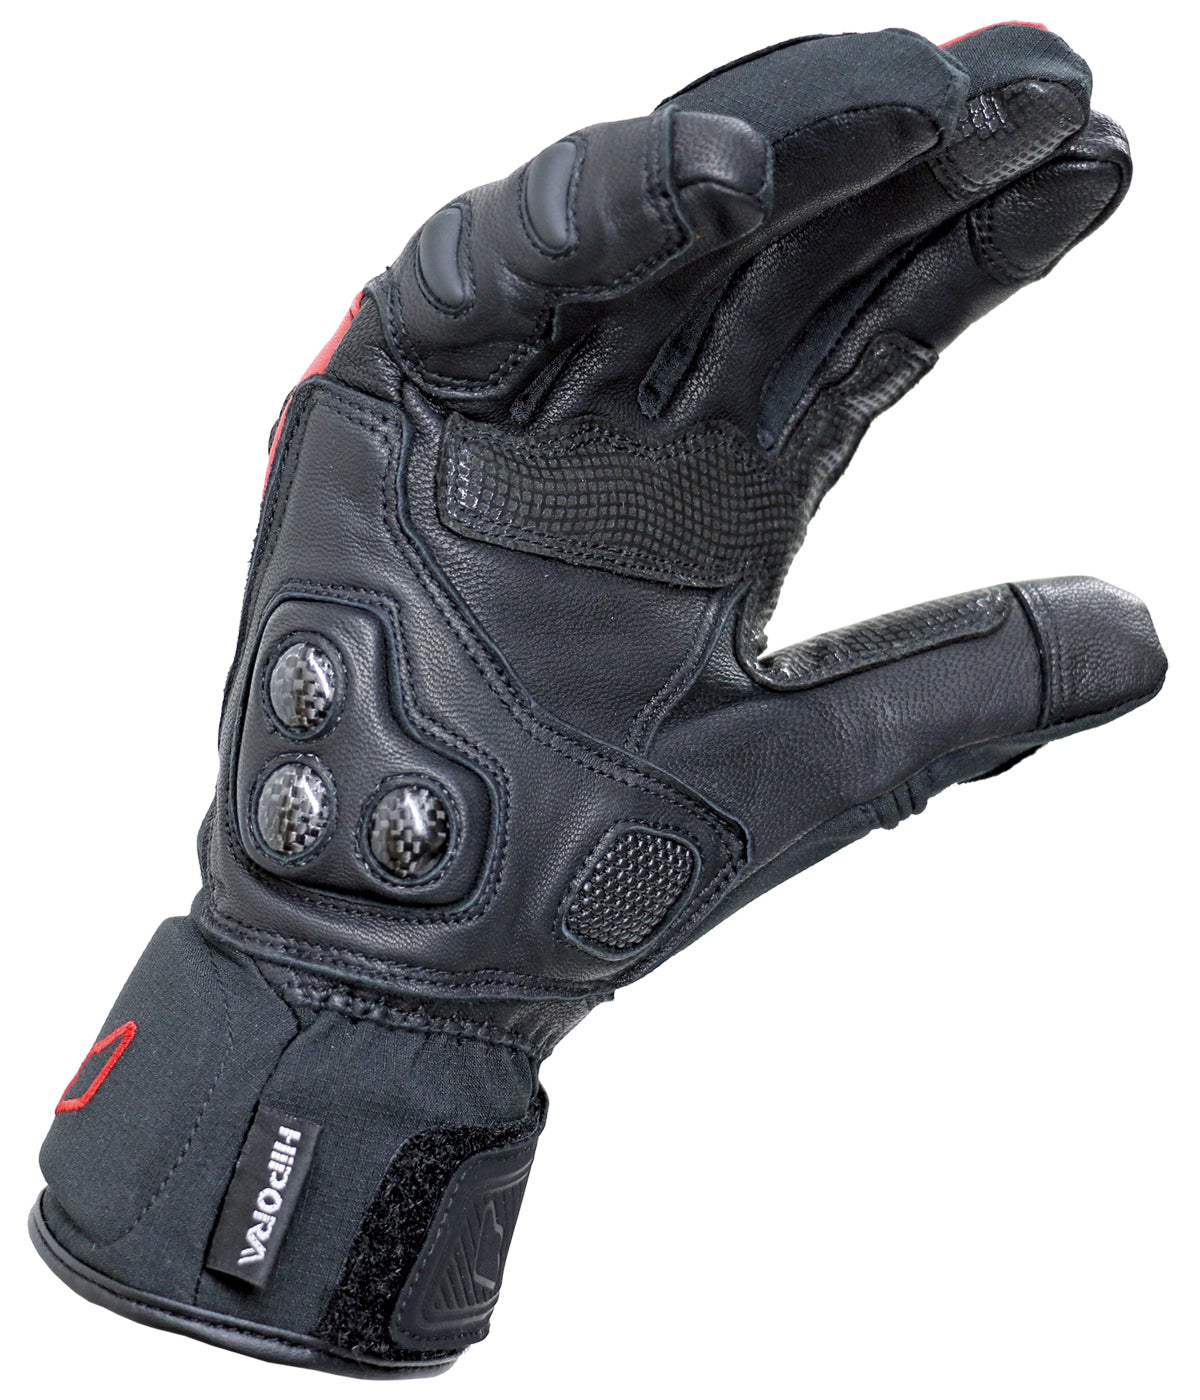 WS6 Gloves (short sleeved glove)